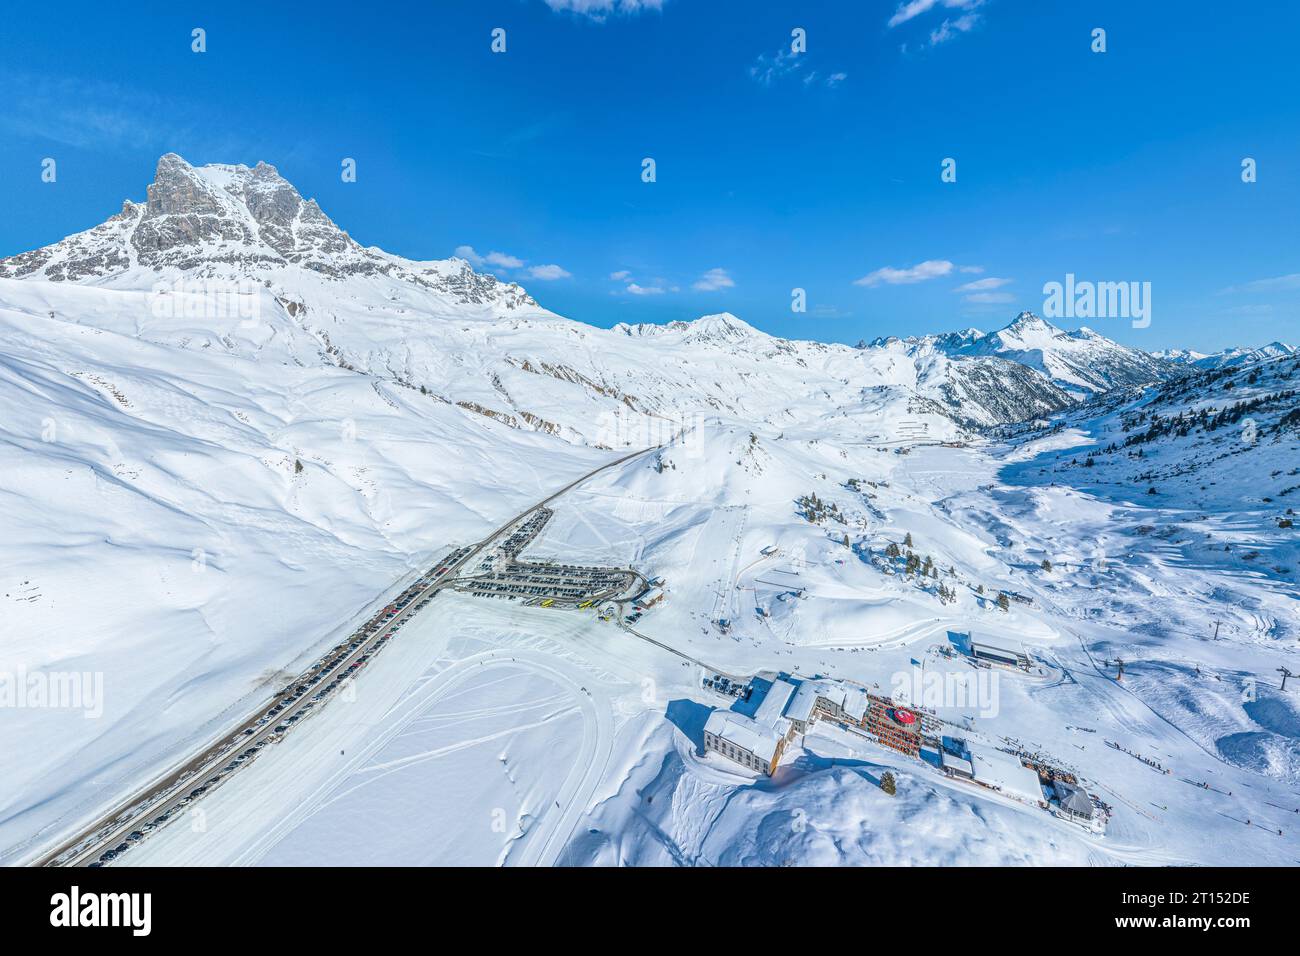 La fantastica stazione sciistica di alta montagna di Warth-Schroecken, sull'Arlberg, in Austria, dall'alto Foto Stock